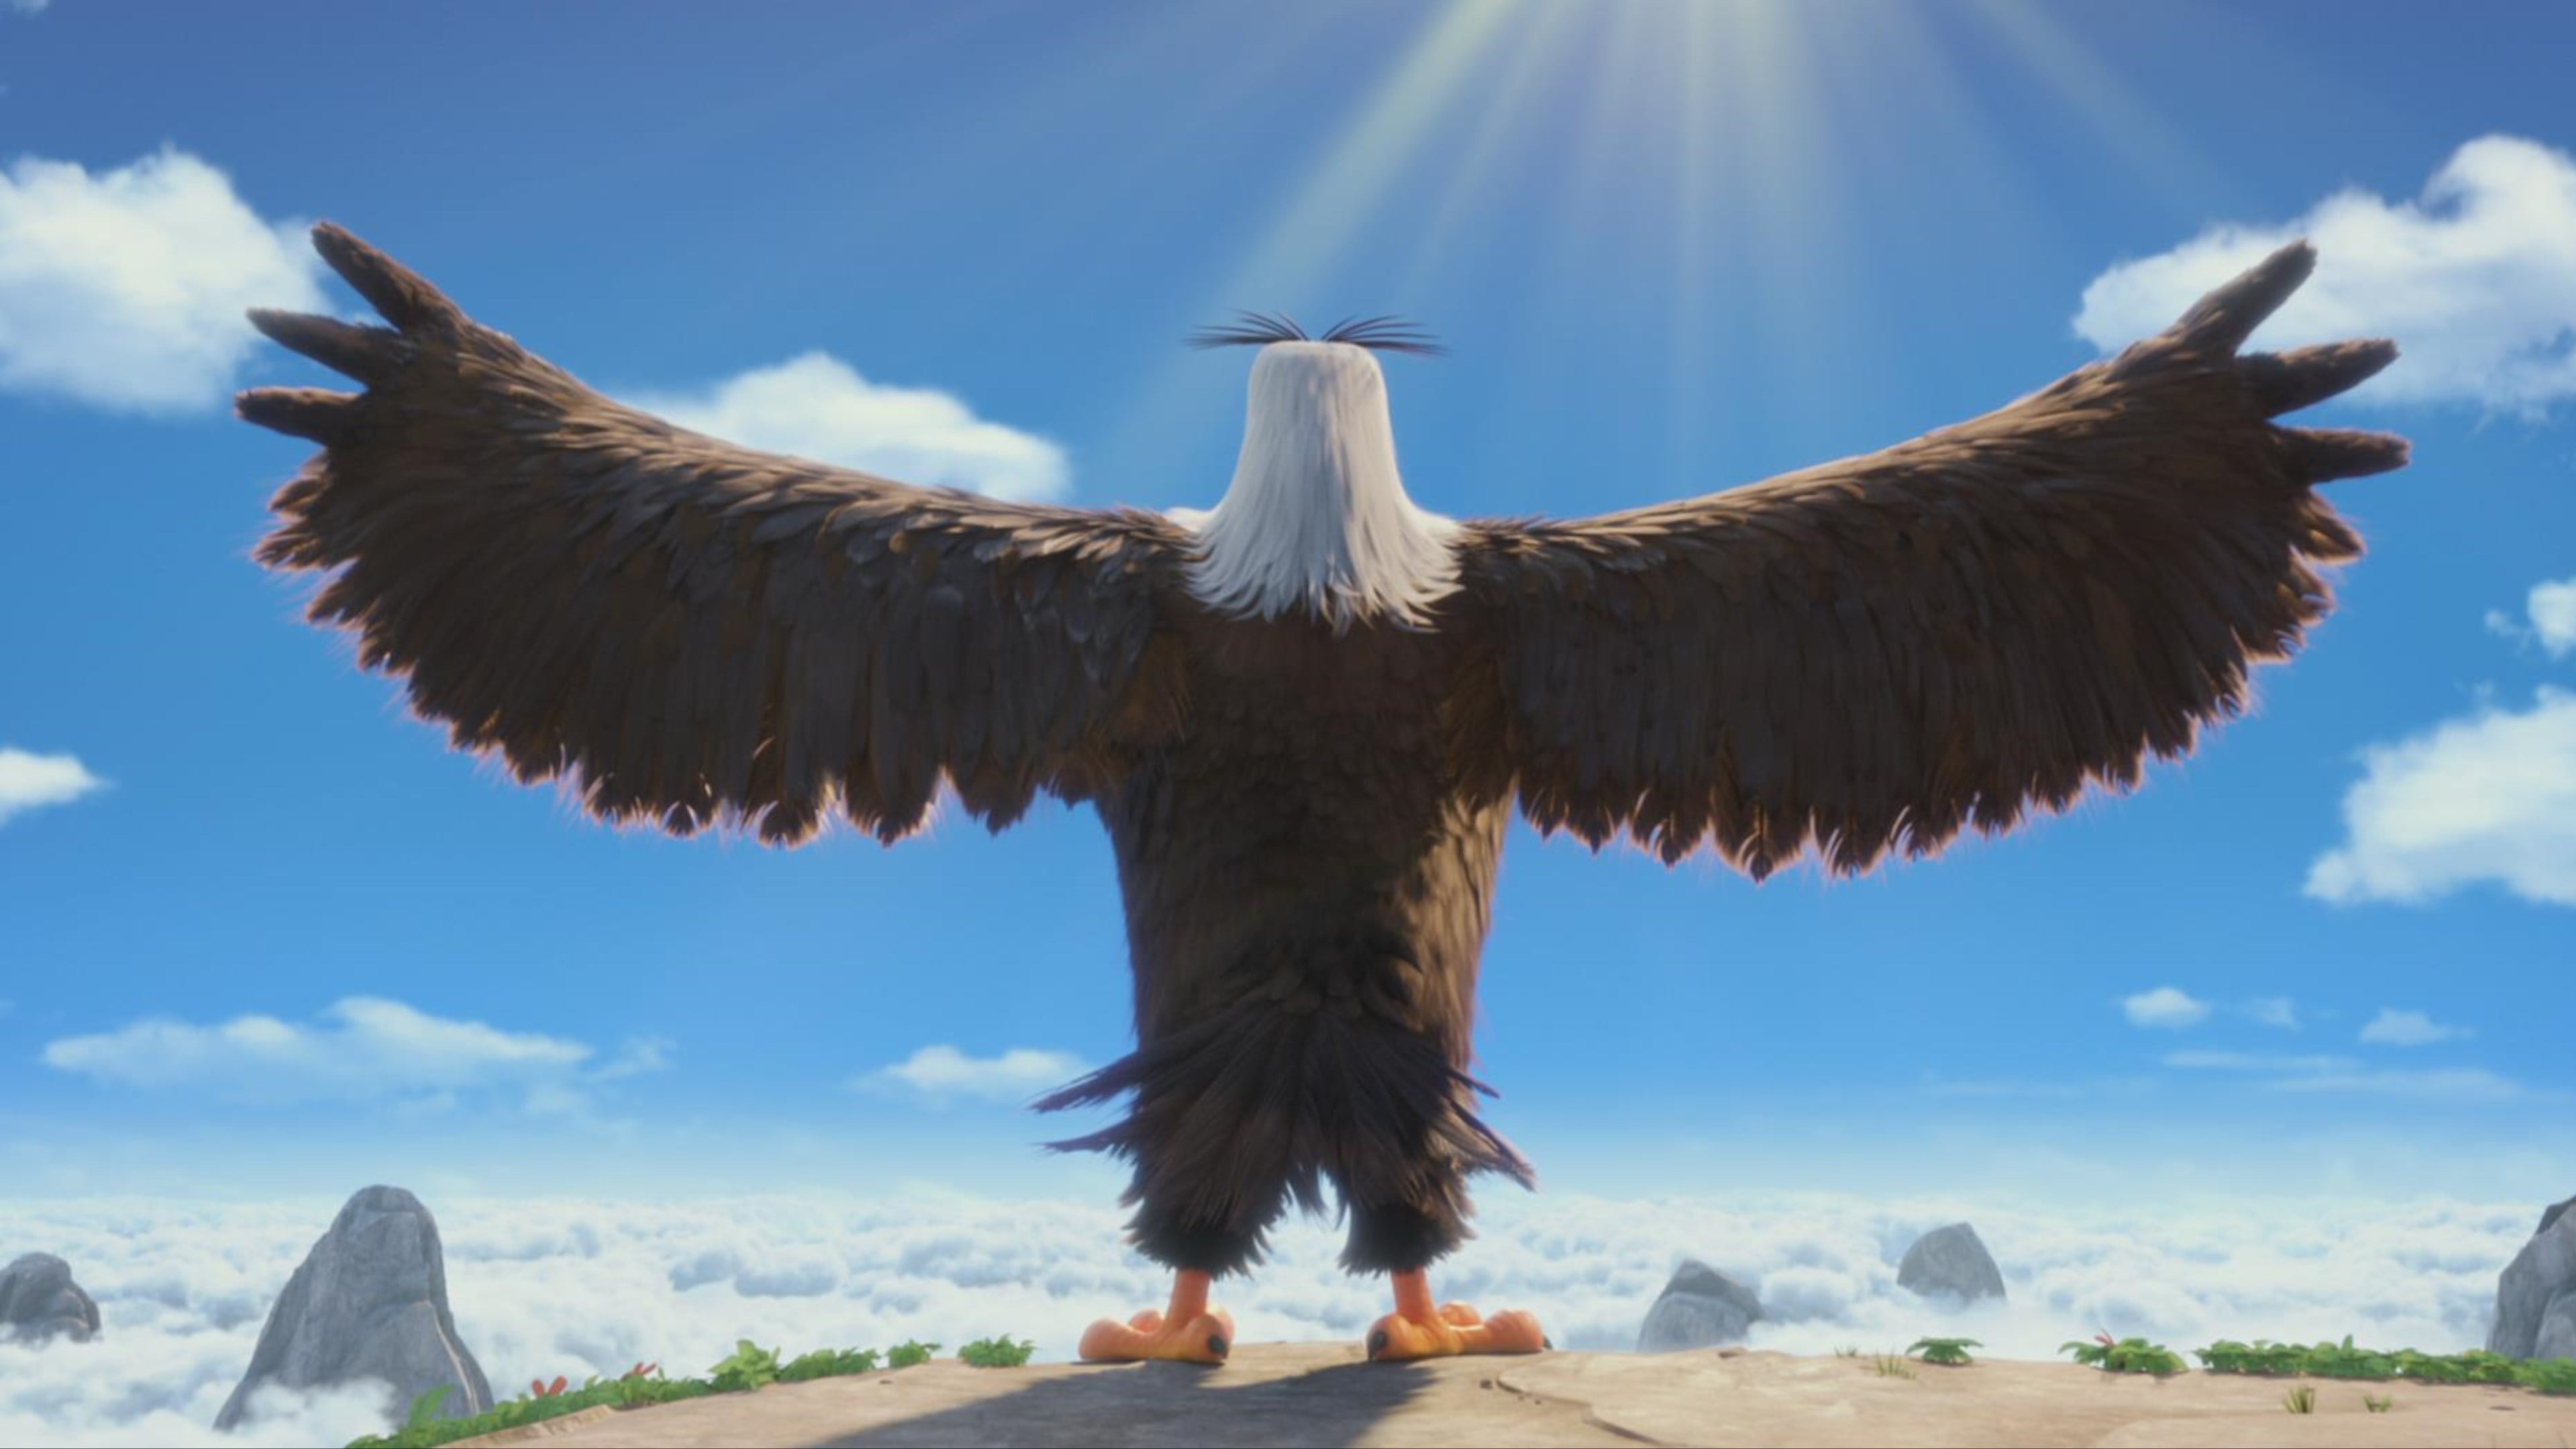 angry birds, movies, animated movies, 2016 movies, the angry birds movie